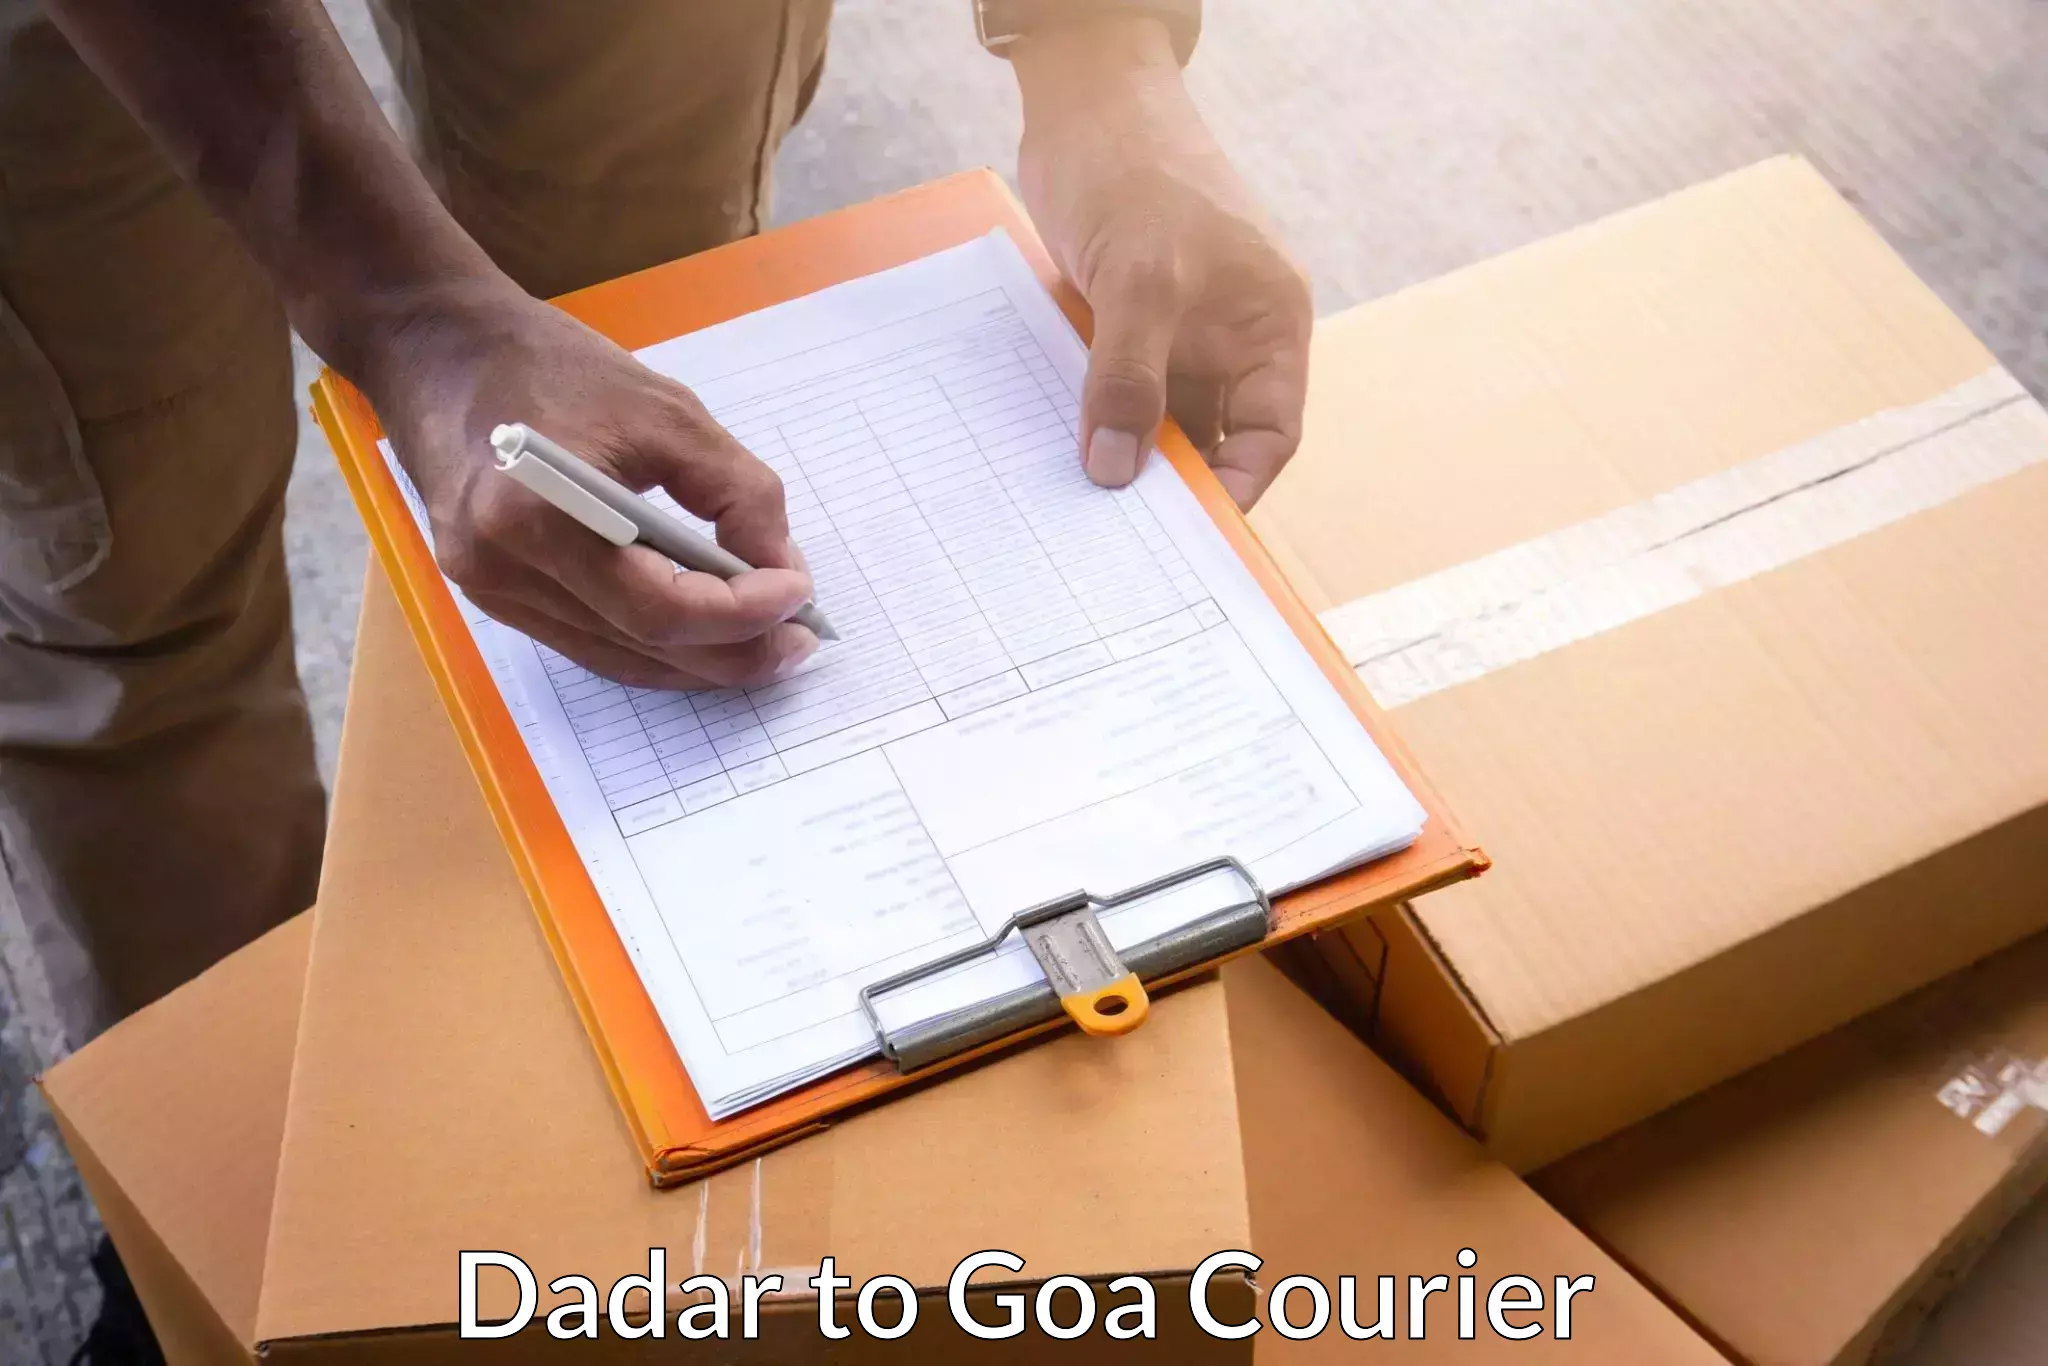 Efficient freight service Dadar to Goa